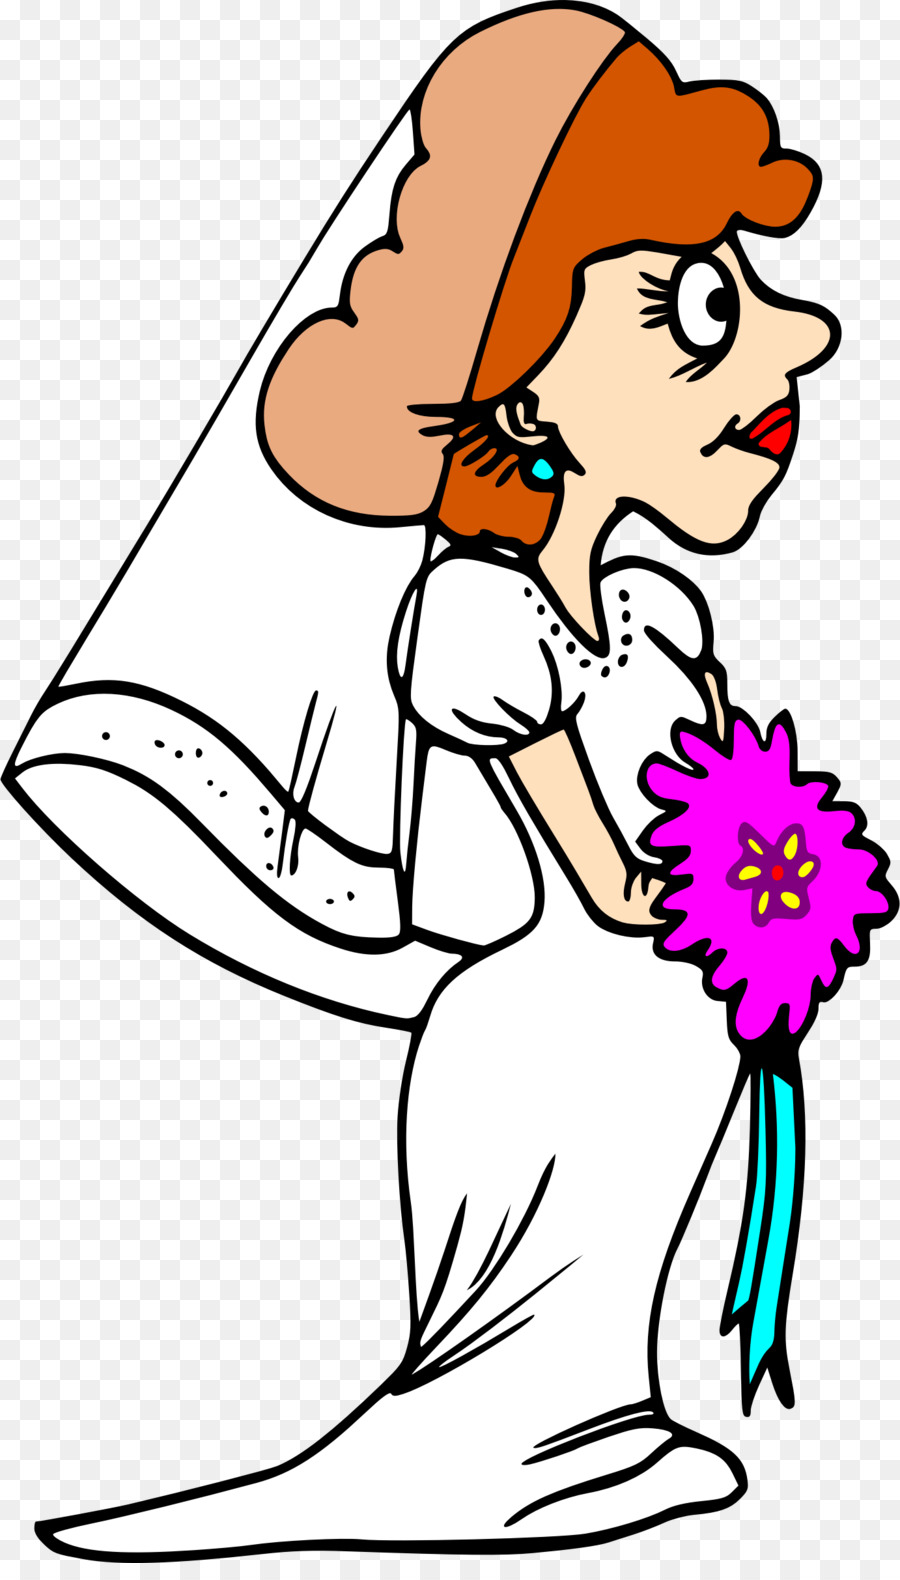 Bride Cartoon clipart.